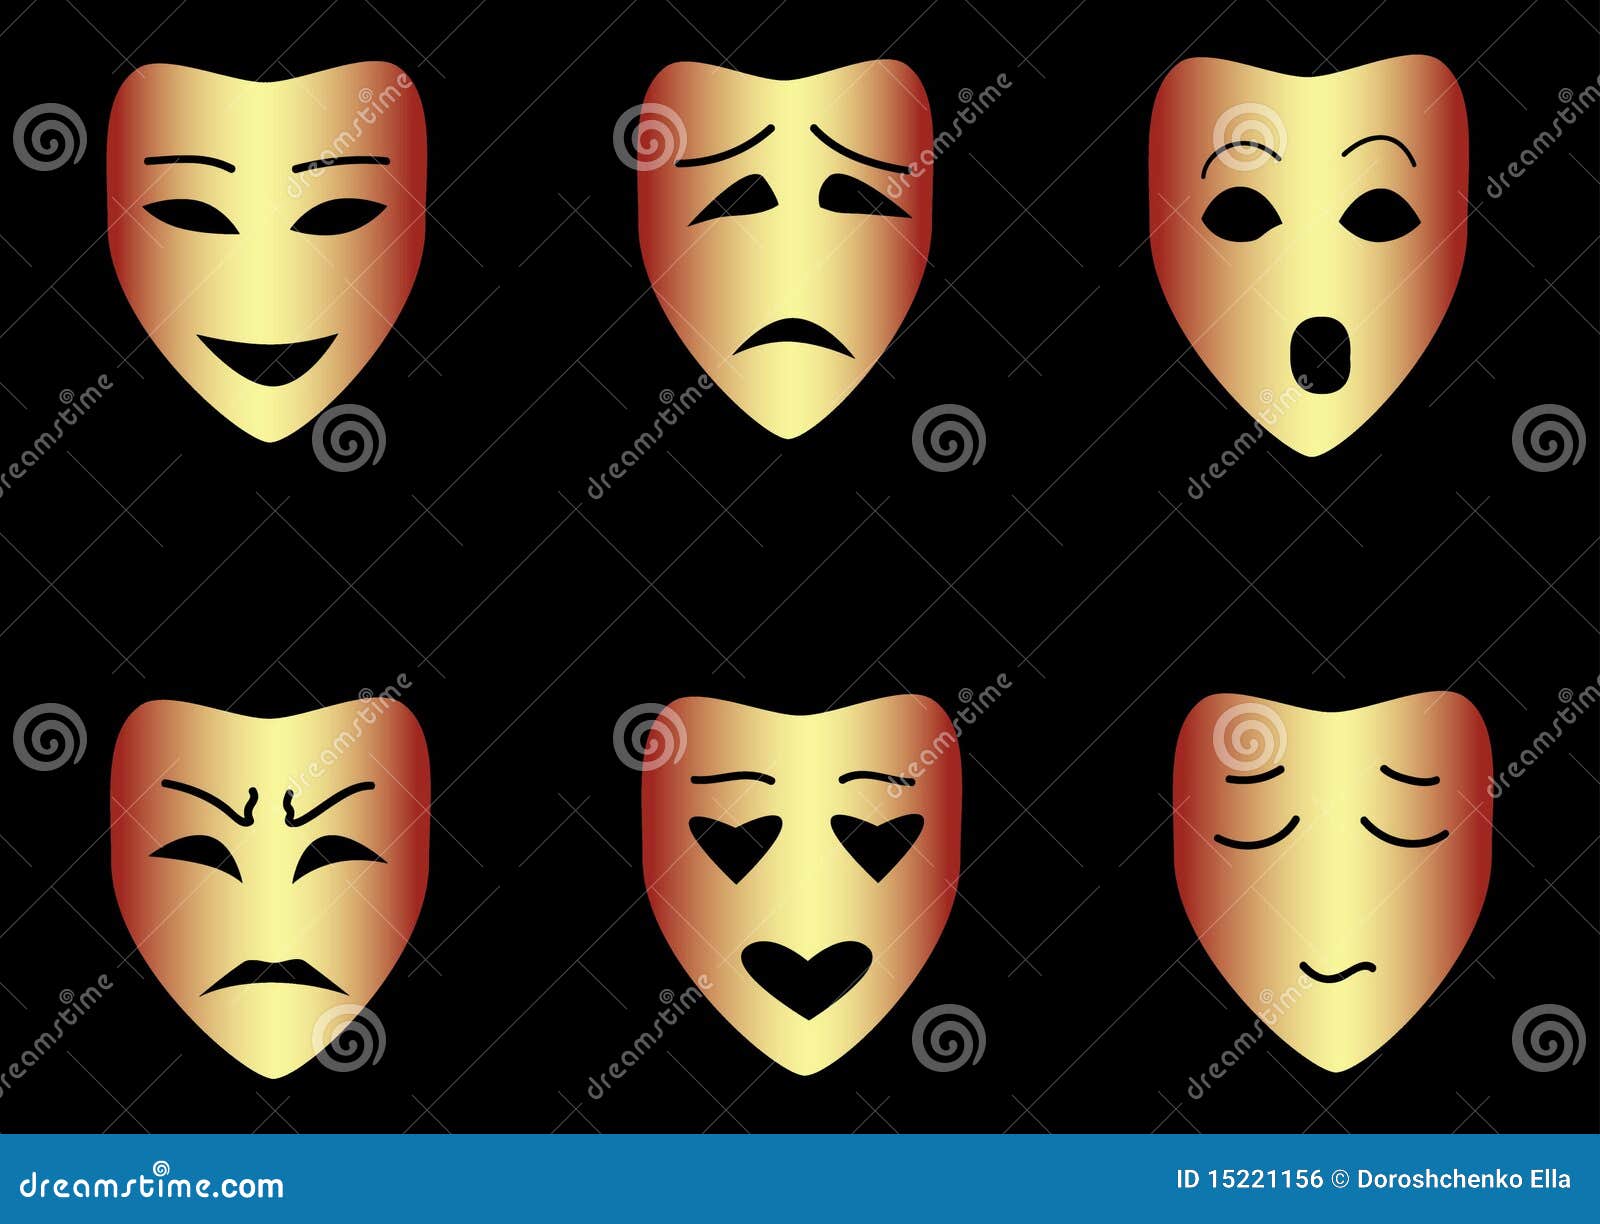 Театральная маска средняя группа. Театральные маски. Маски эмоции. Маска мимика. Маски с разными эмоциями.